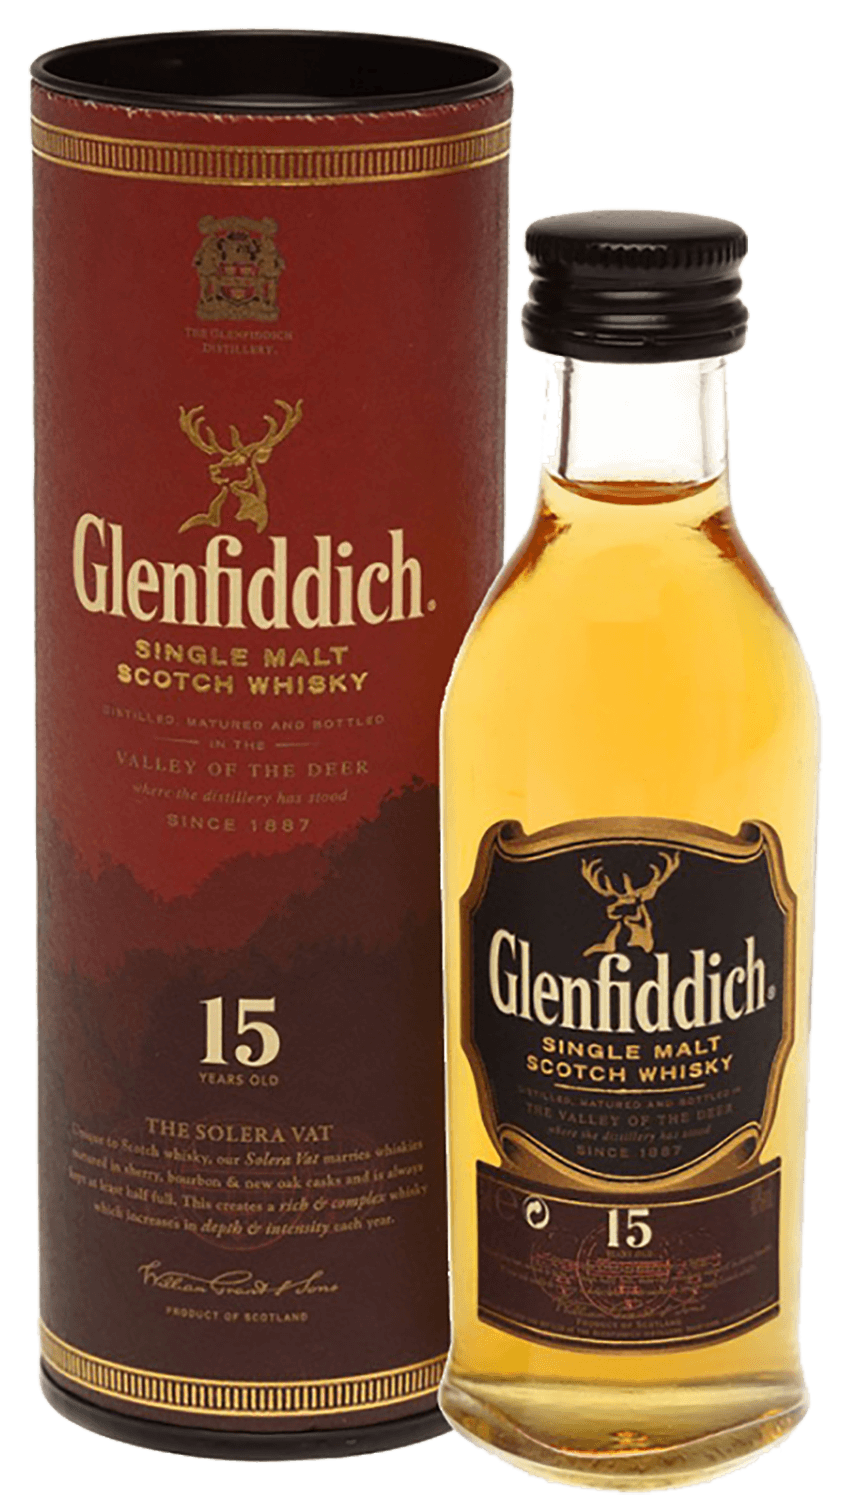 Glenfiddich Single Malt Scotch Whisky 15 y.o. (gift box) glenfiddich 18 years old single malt scotch whisky gift box